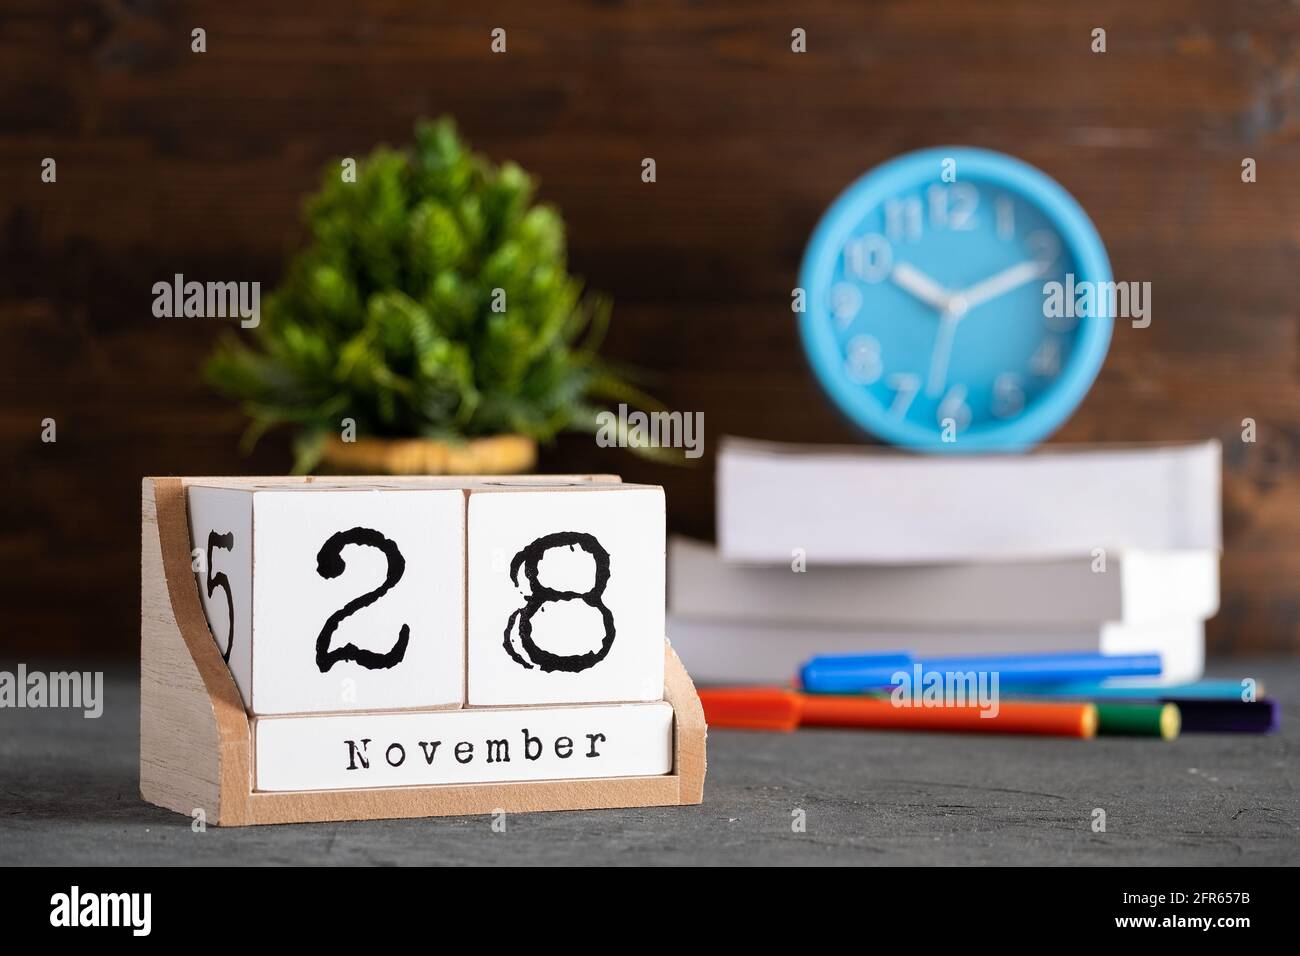 28 novembre. Calendrier cubique en bois de novembre 28 avec objets flous sur fond. Banque D'Images